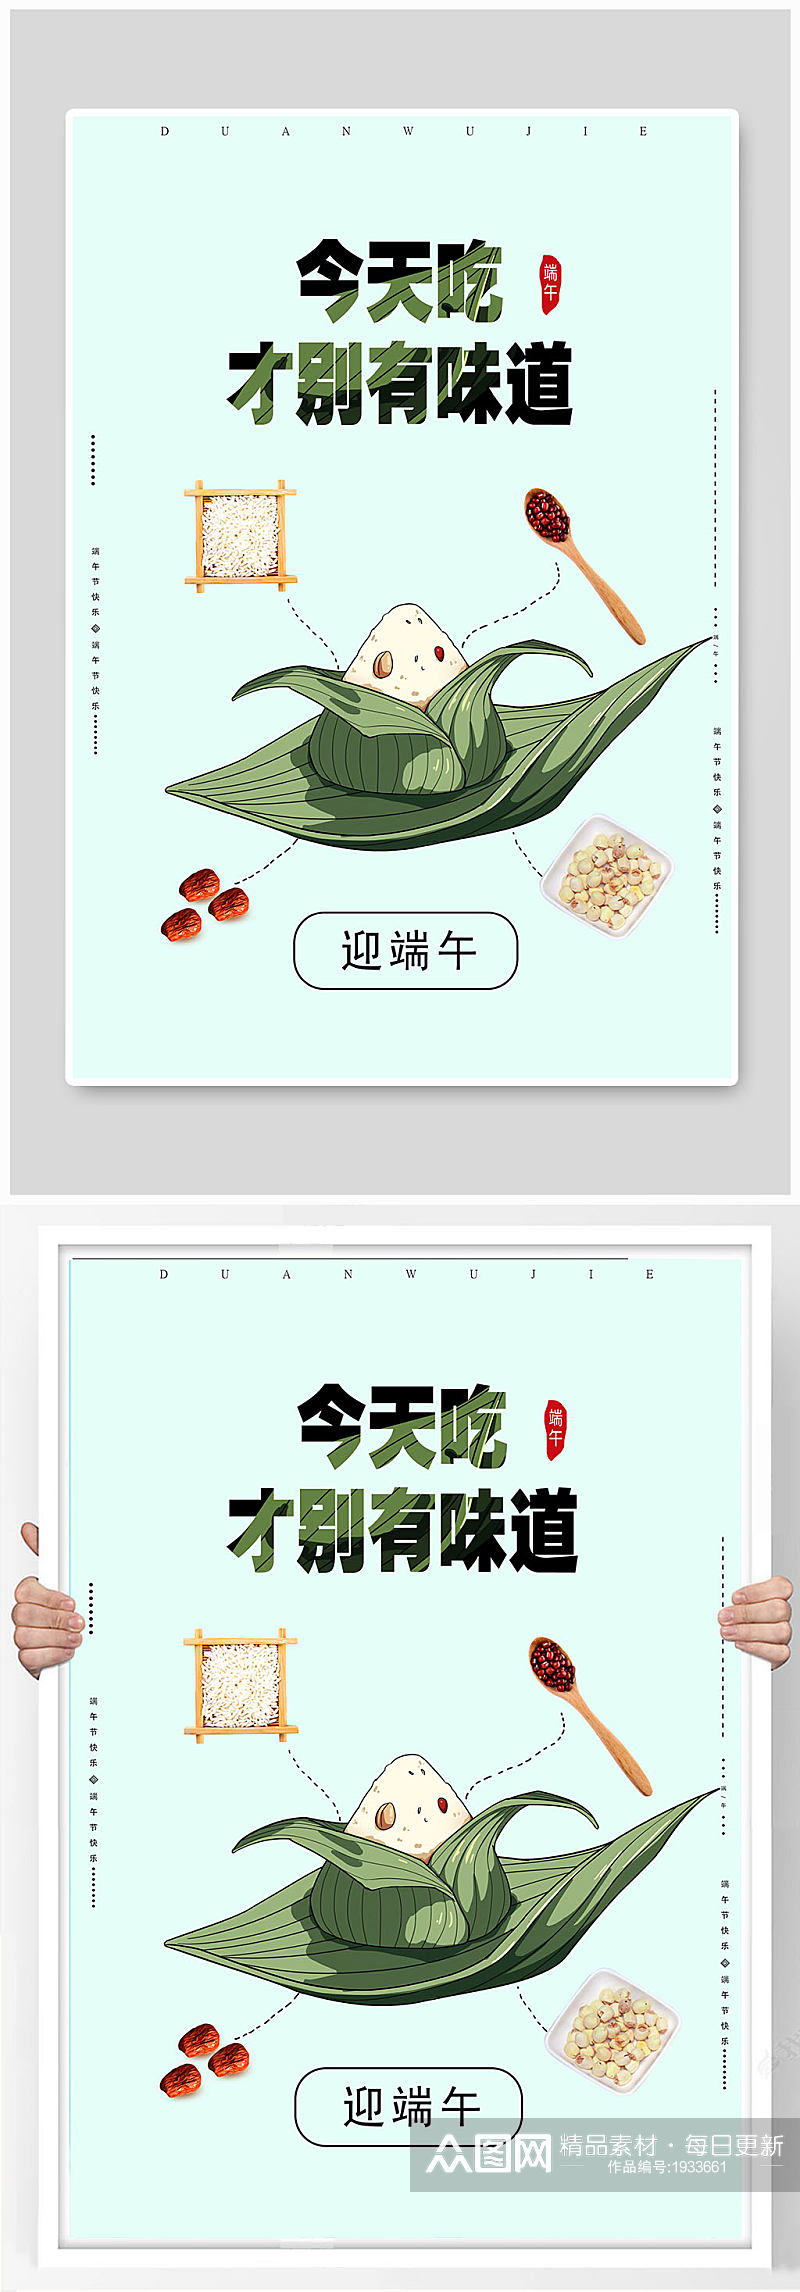 创意中国风水彩风端午节海报展板设计素材